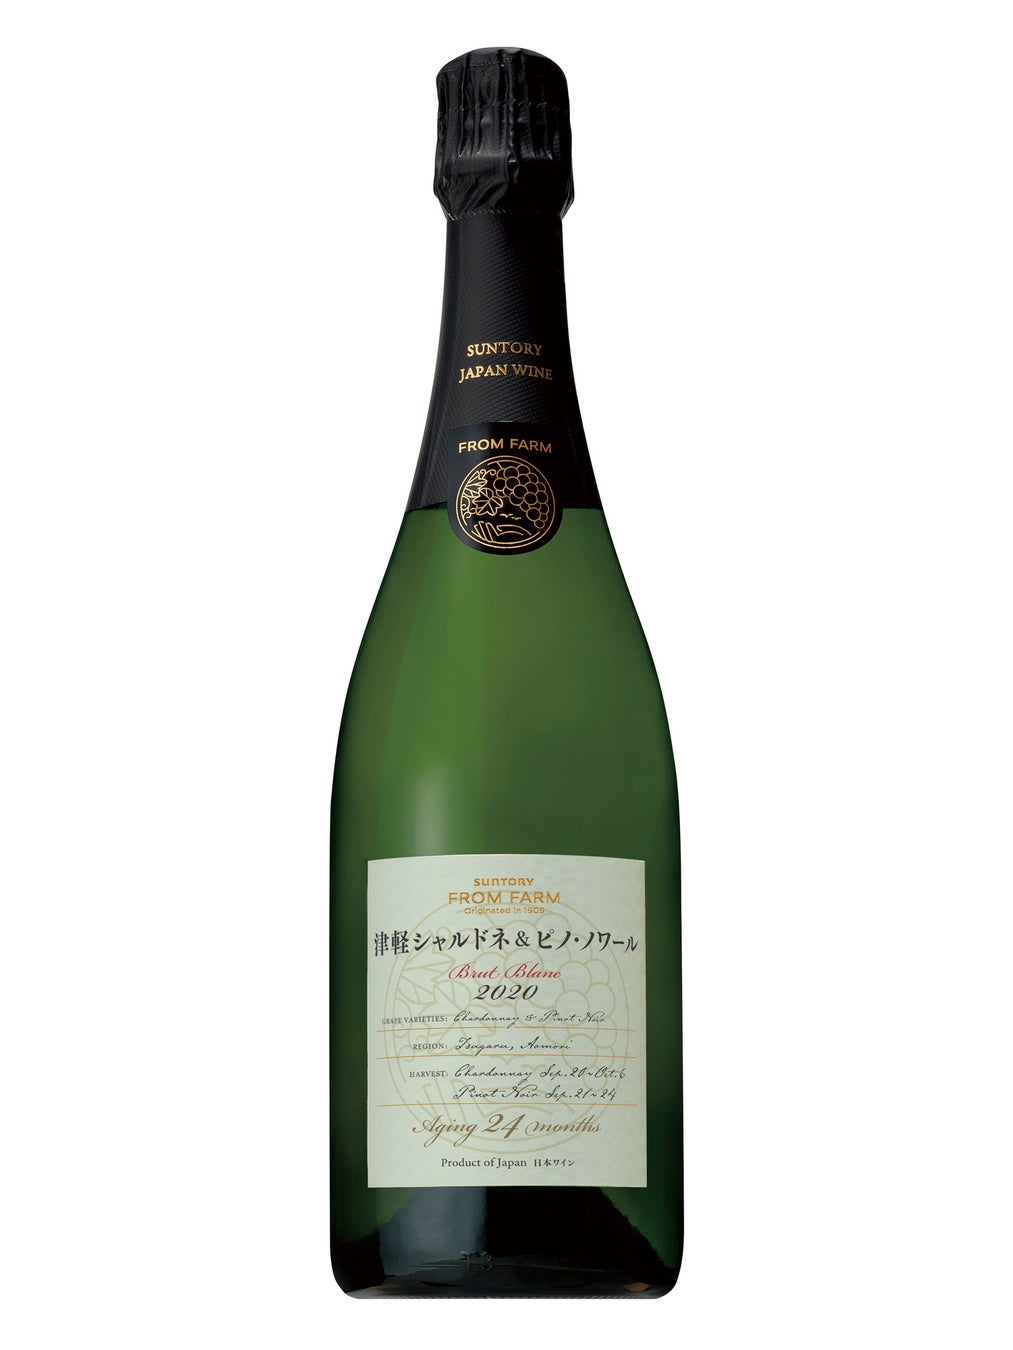 「Japan Wine Competition（日本ワインコンクール）２０２３」で「ＳＵＮＴＯＲＹ ＦＲＯＭ ＦＡＲＭ」ブランド２品が金賞・部門最高賞を受賞